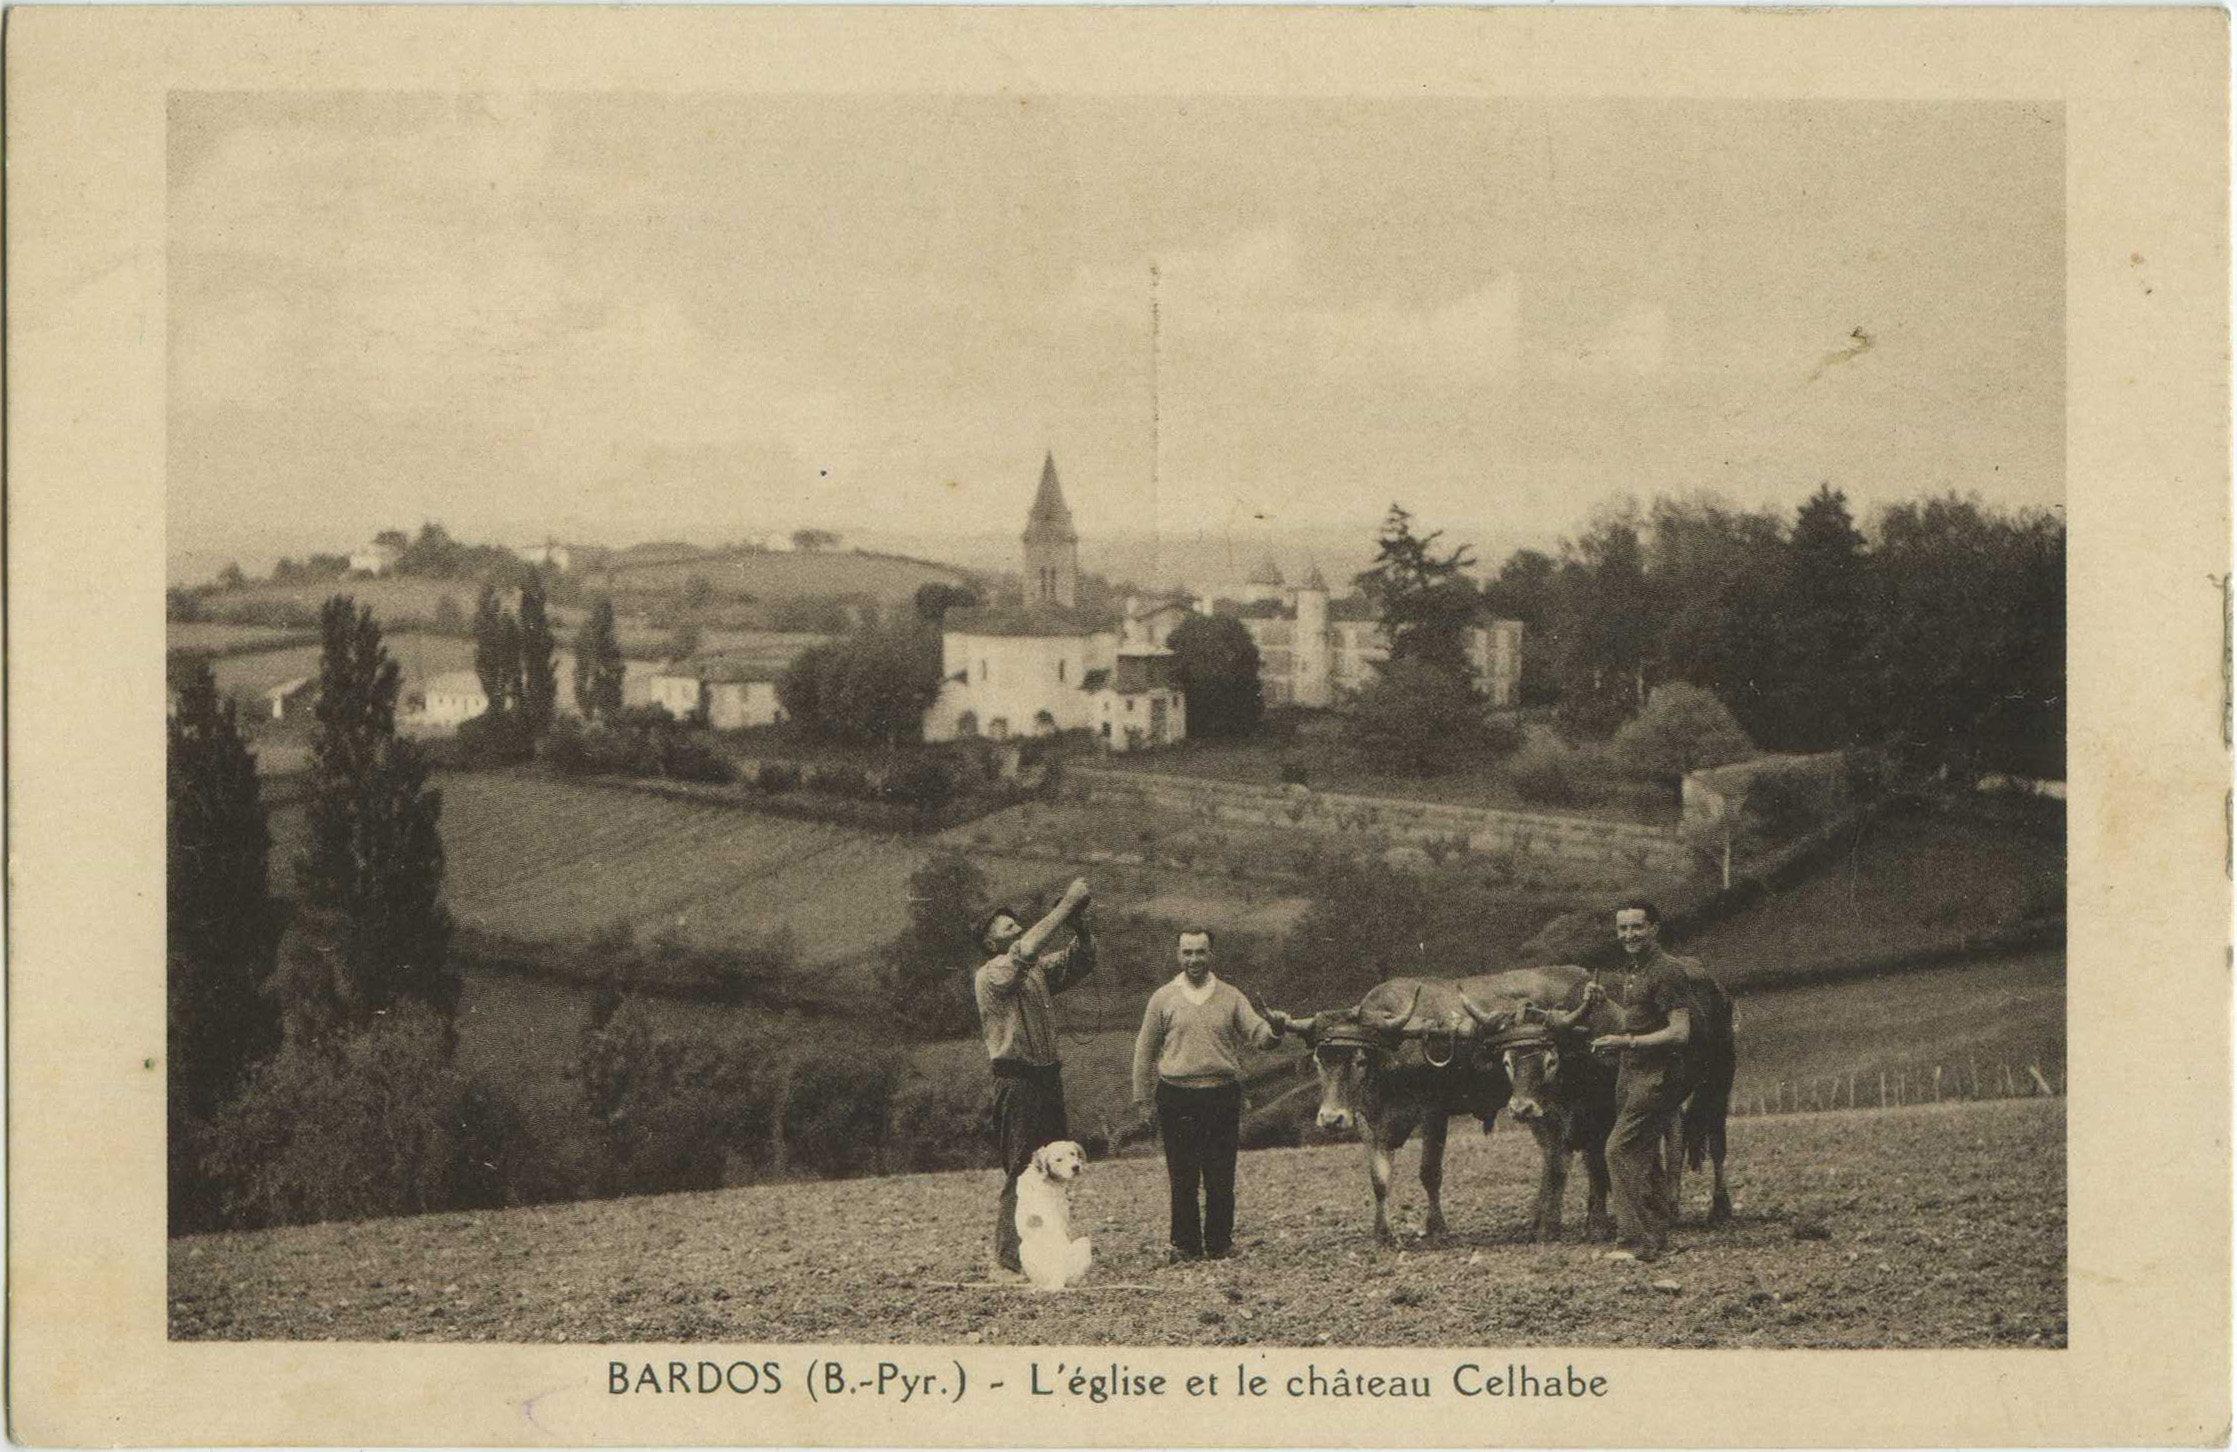 Bardos - L'église et le château Celhabe